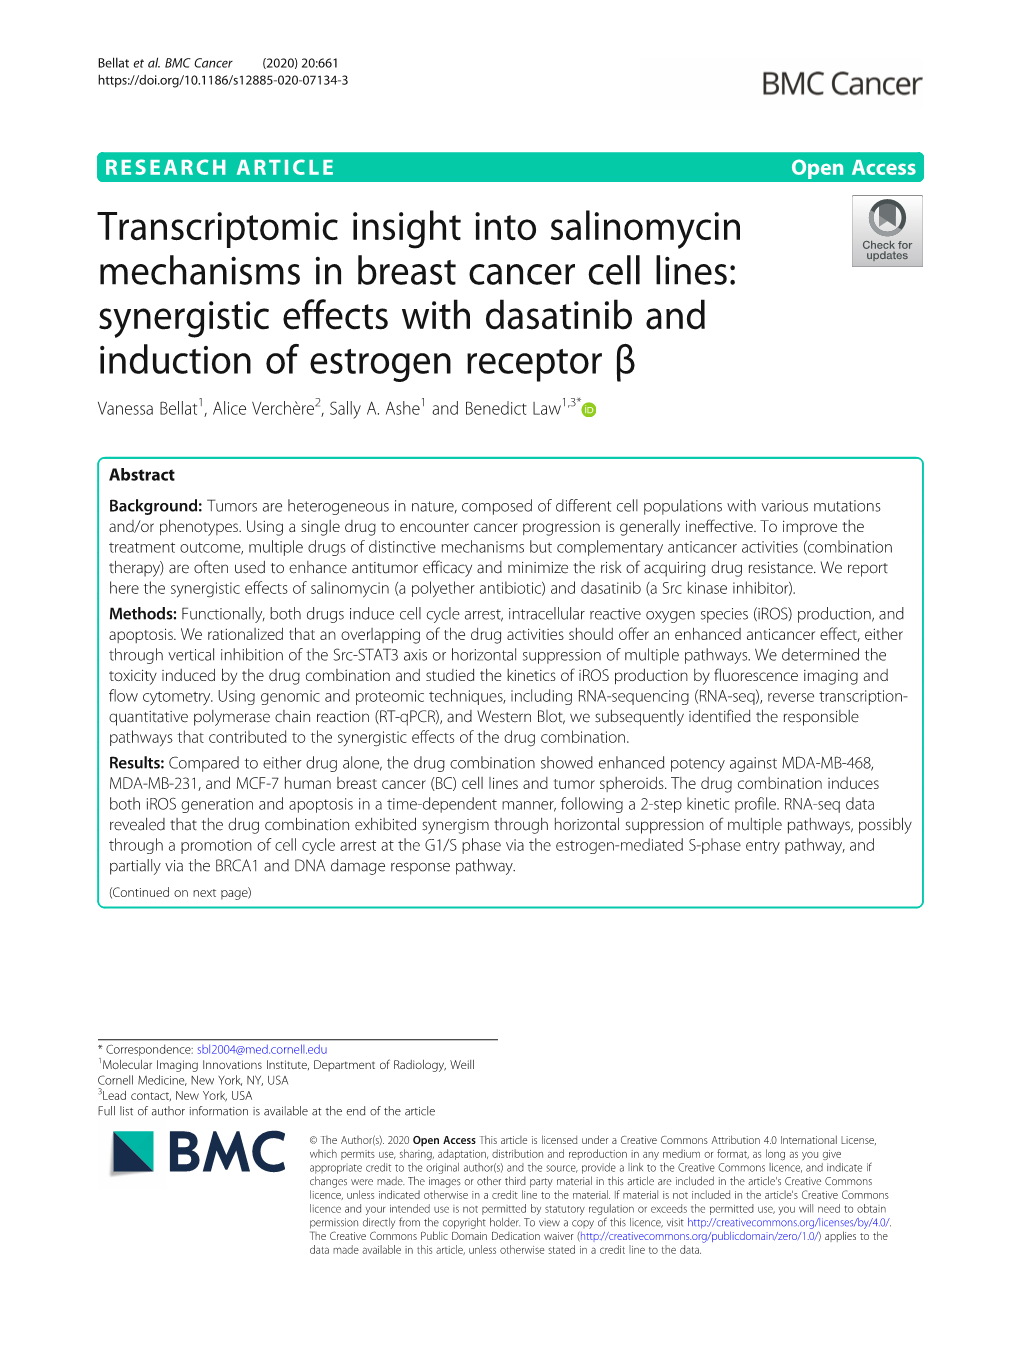 Transcriptomic Insight Into Salinomycin